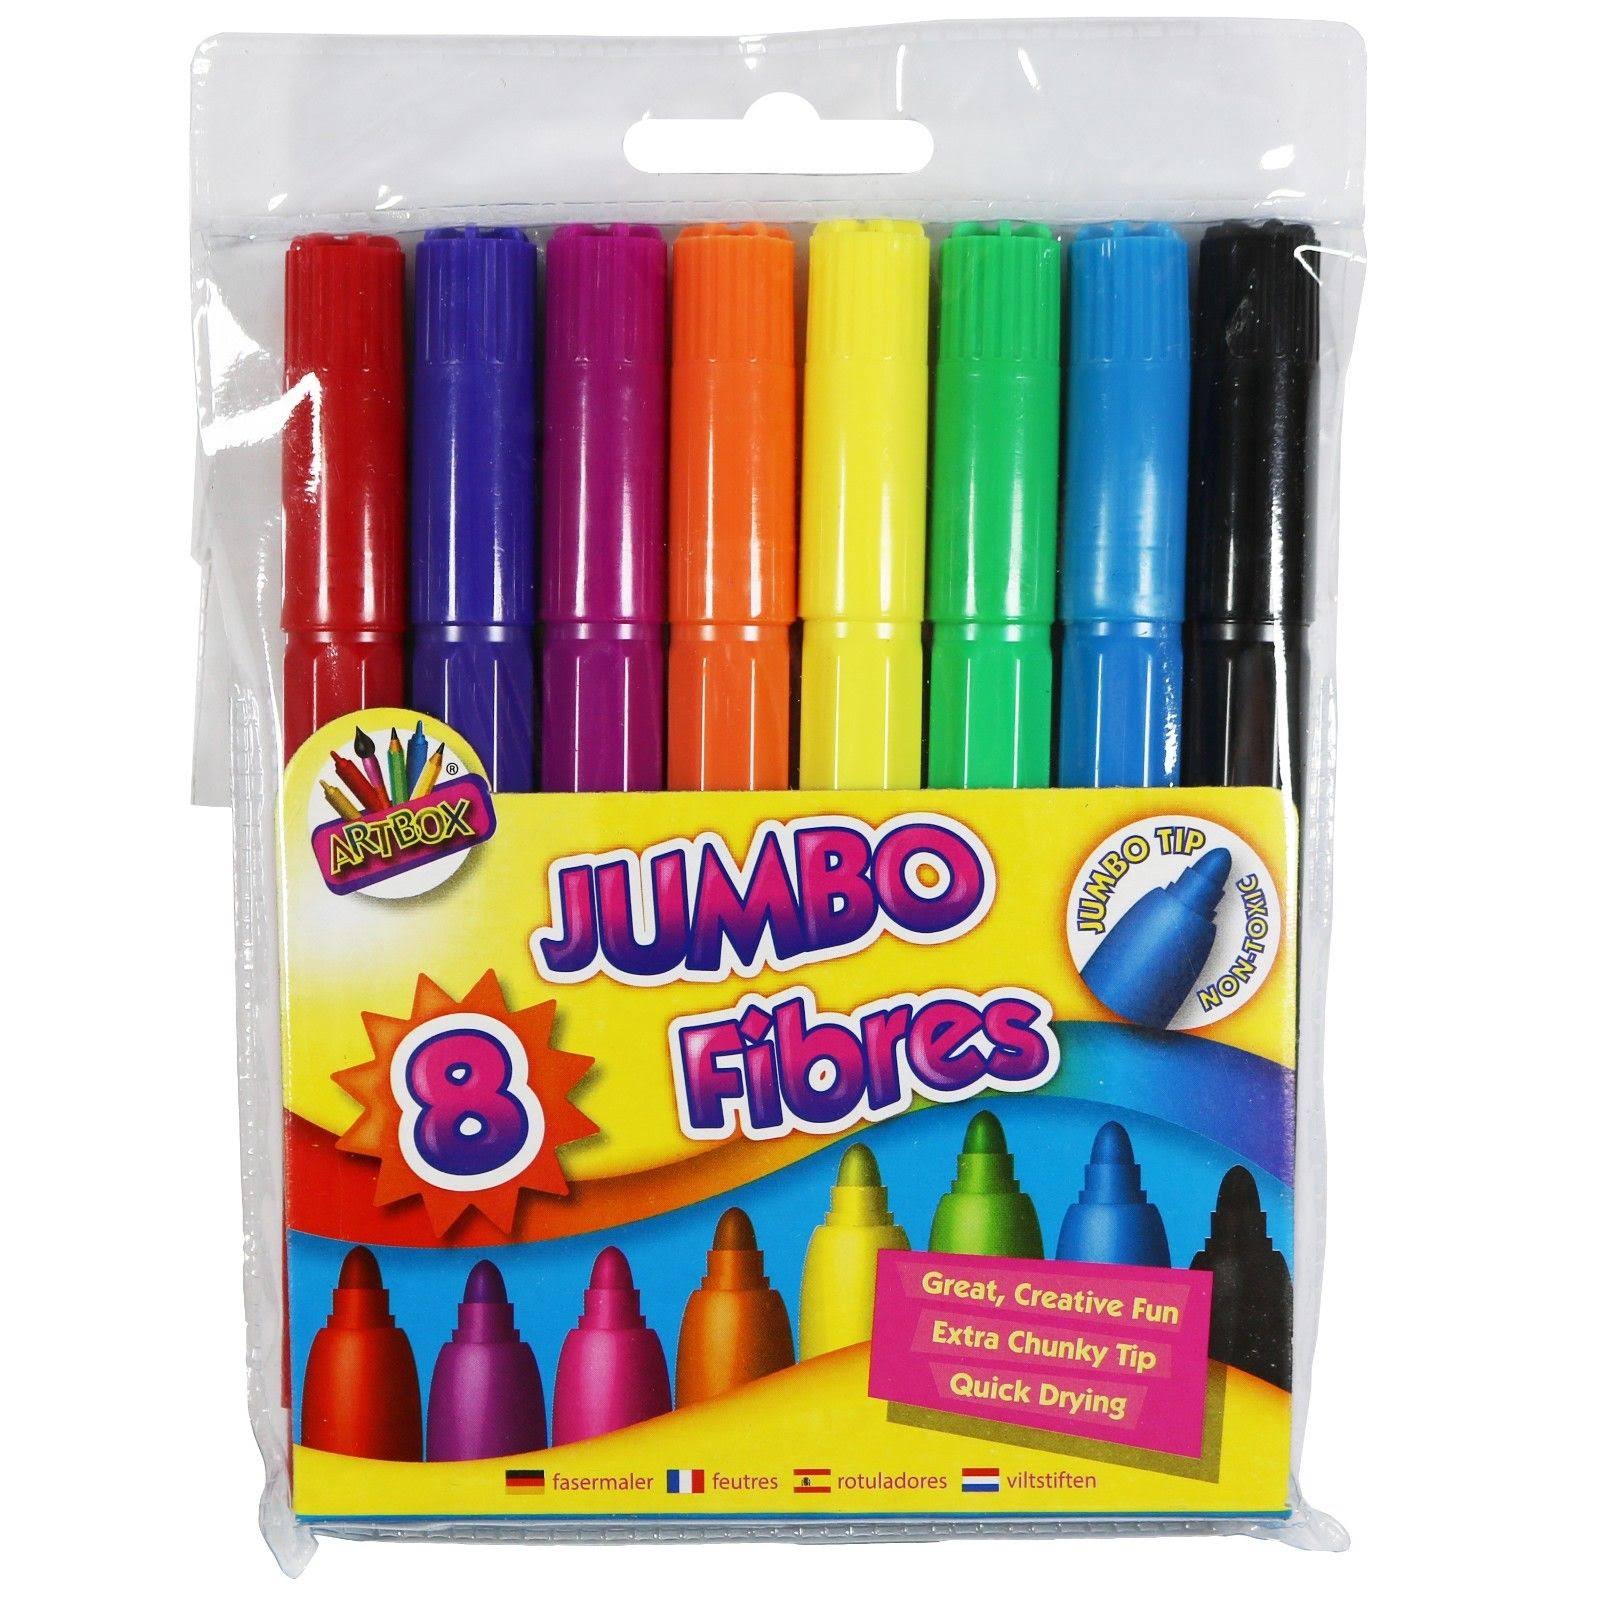 Jumbo Fibre Color Marker Pens - 8pk